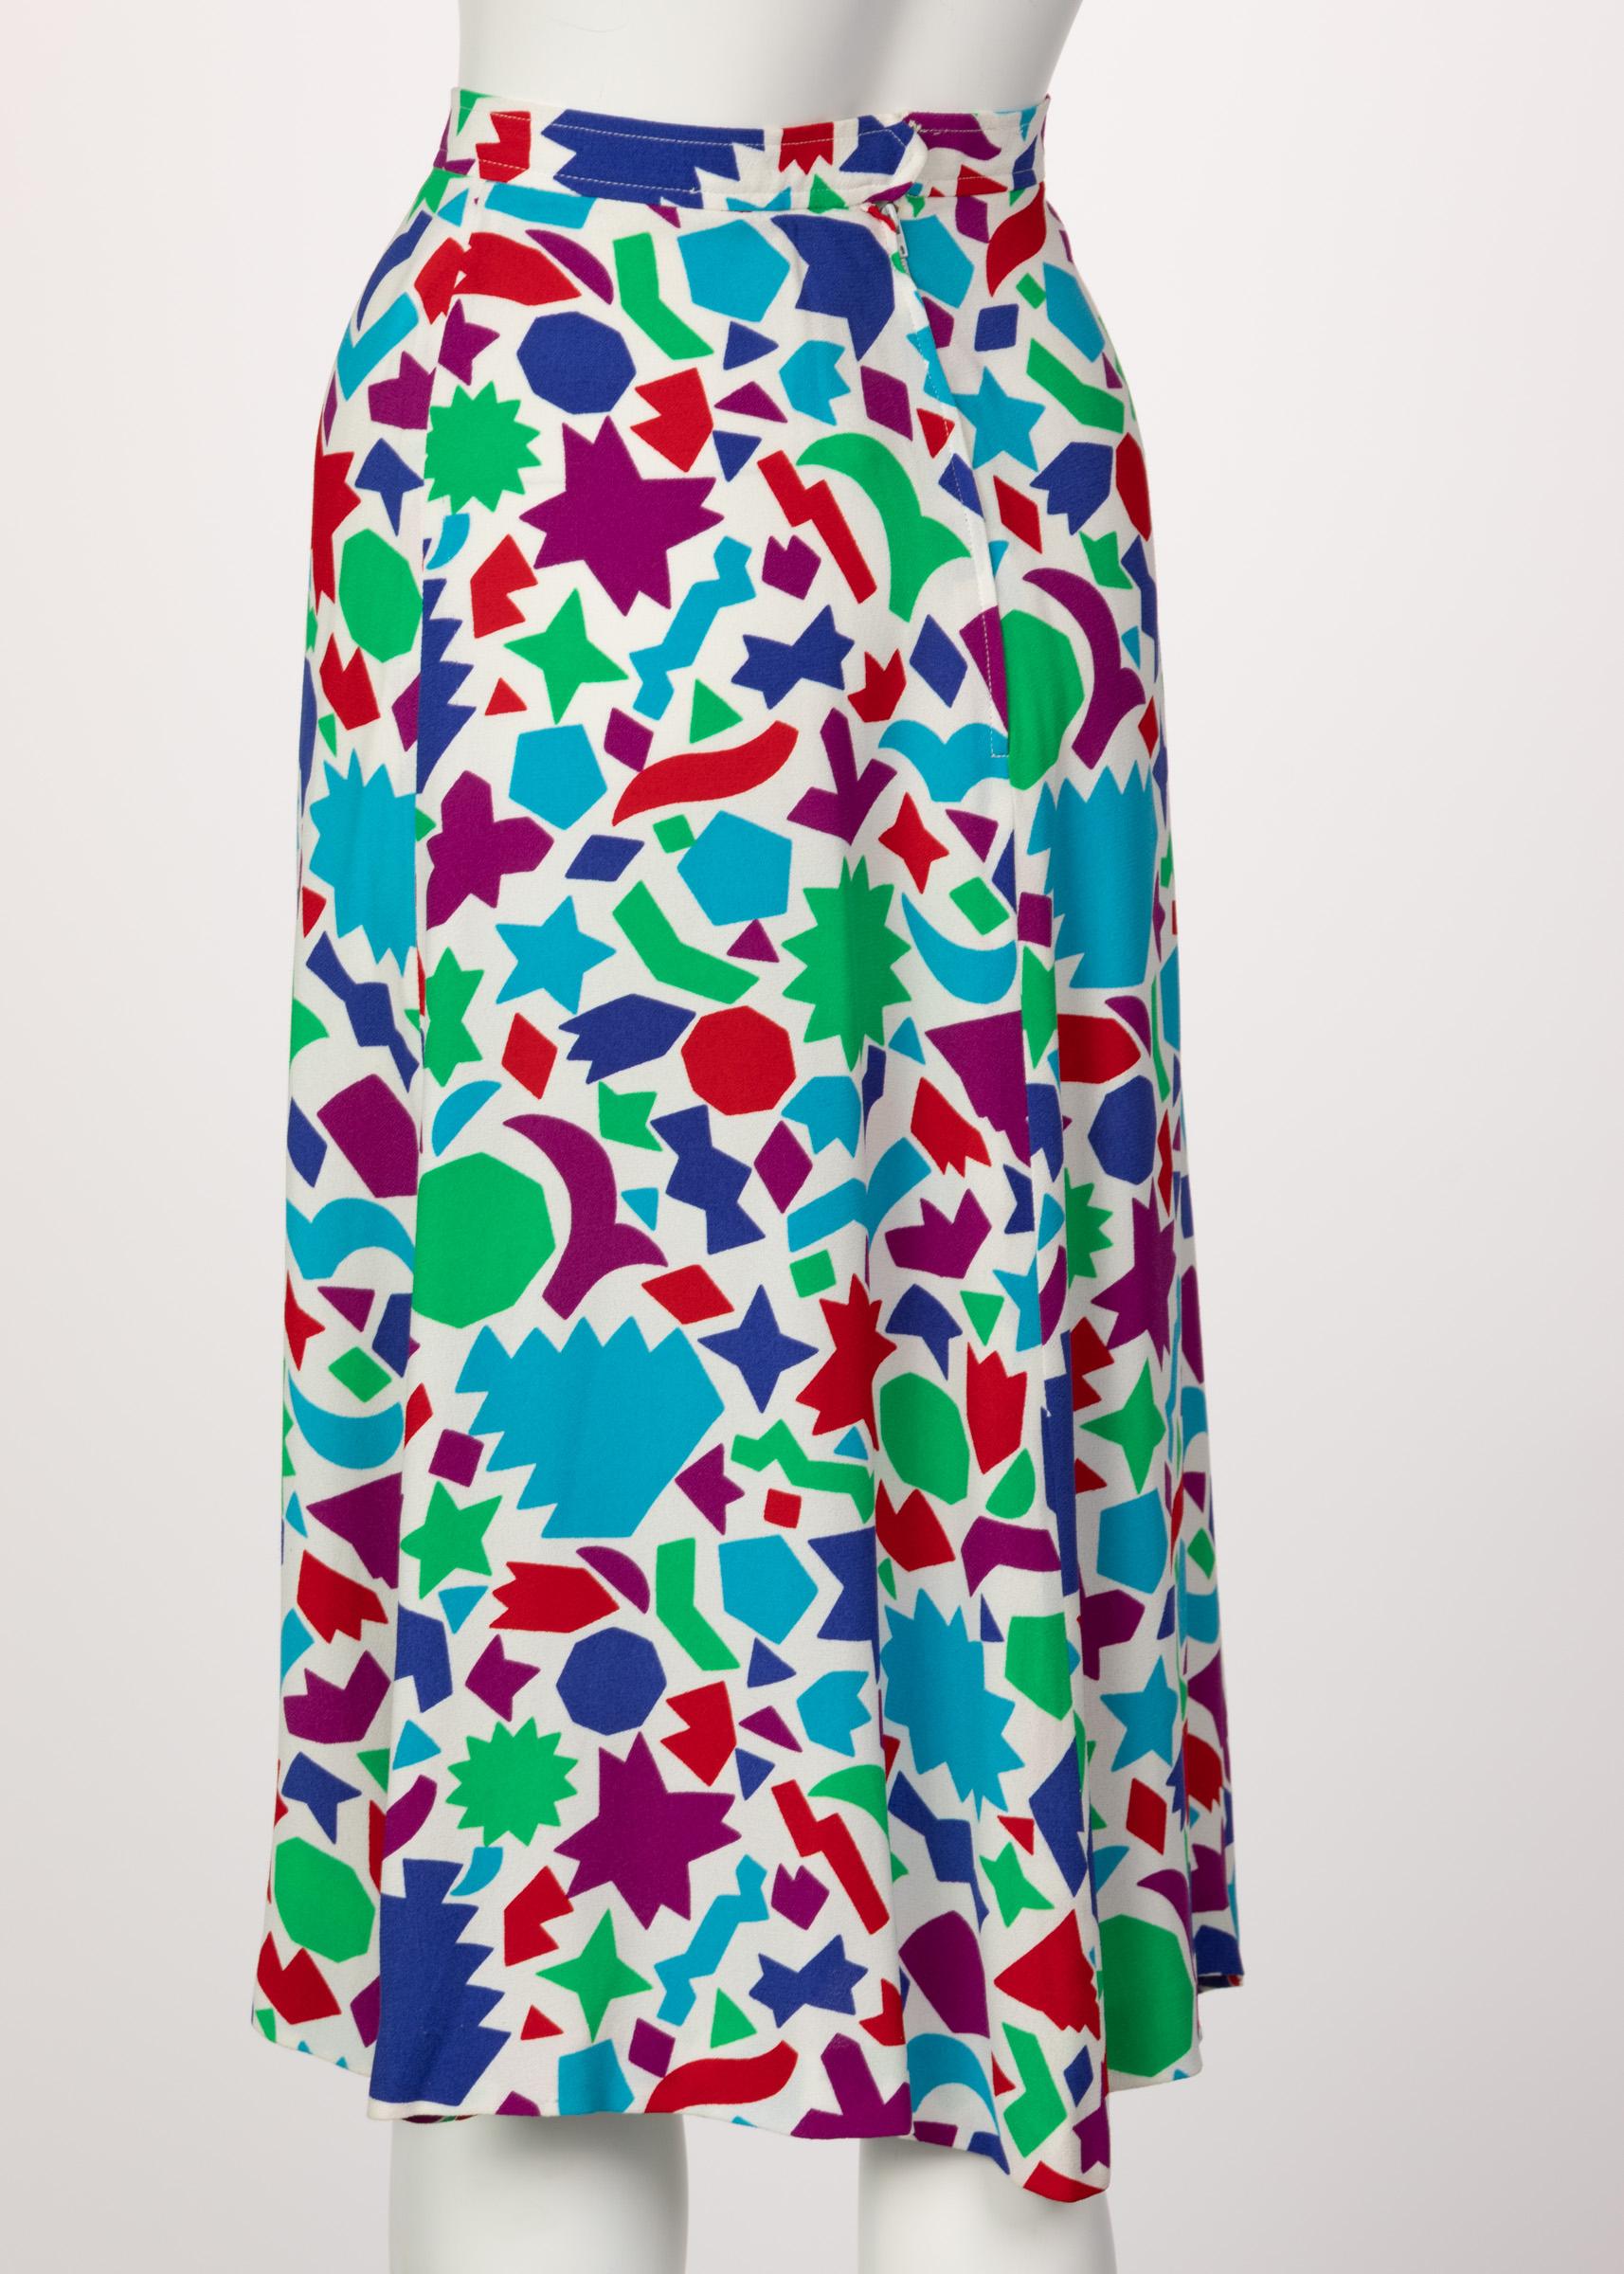 Women's Yves Saint Laurent Matisse Inspired Skirt